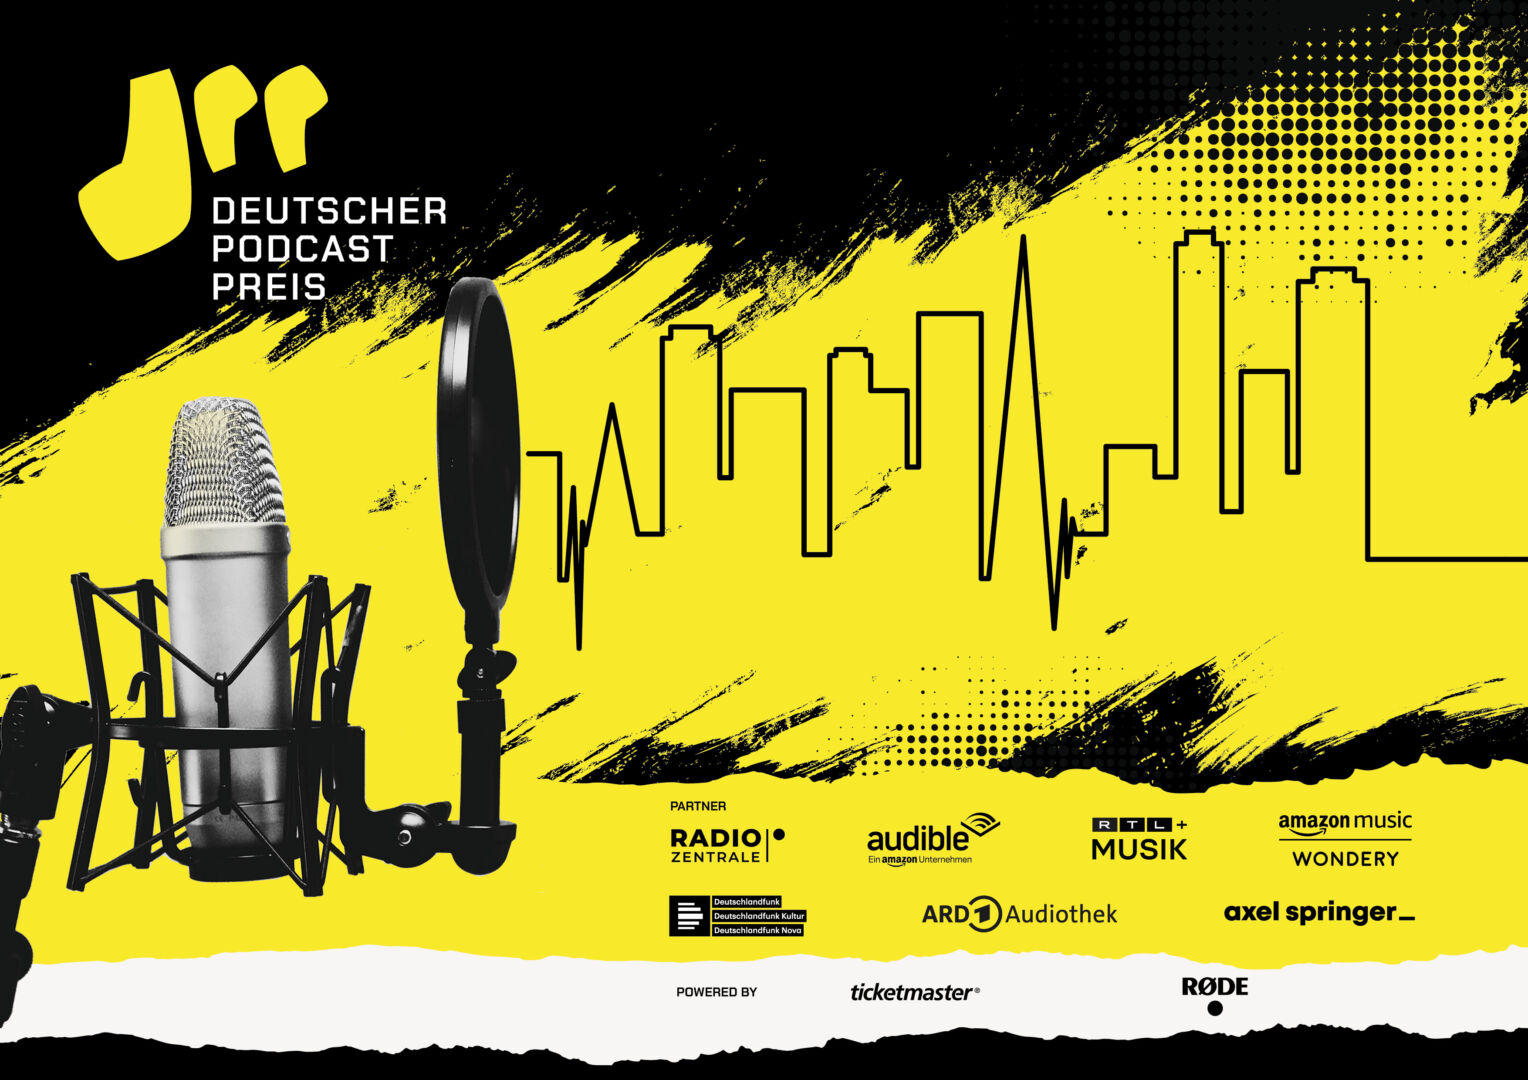 Der Deutsche Podcast Preis Presse Plakat